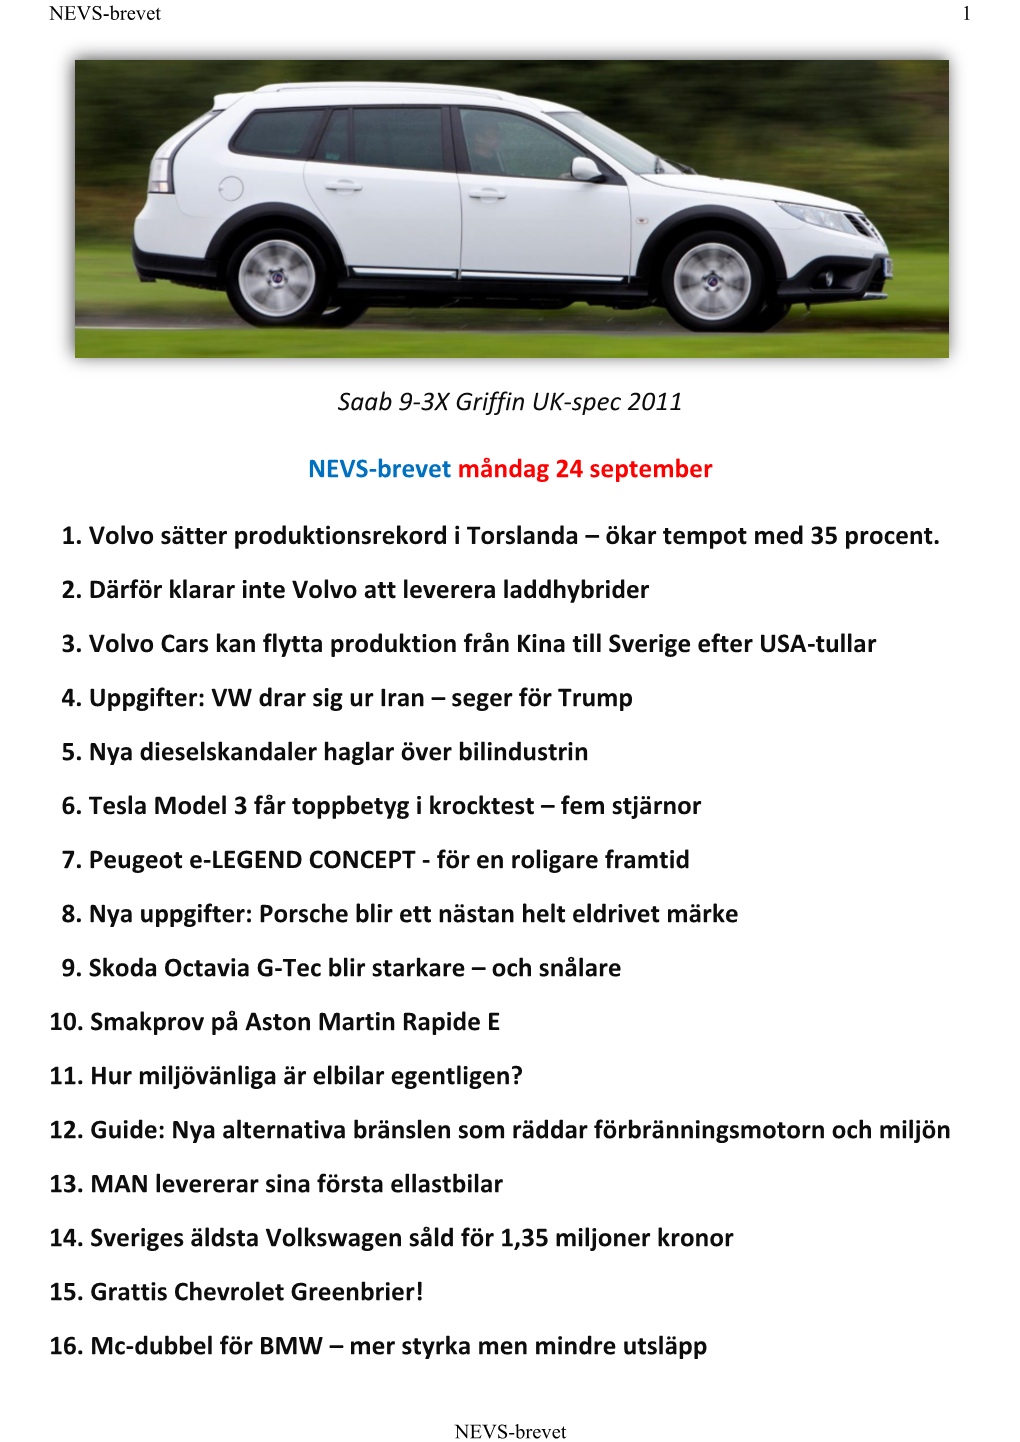 Saab 9-3X Griffin UK-Spec 2011 NEVS-Brevet Måndag 24 September 1. Volvo Sätter Produktionsrekord I Torslanda